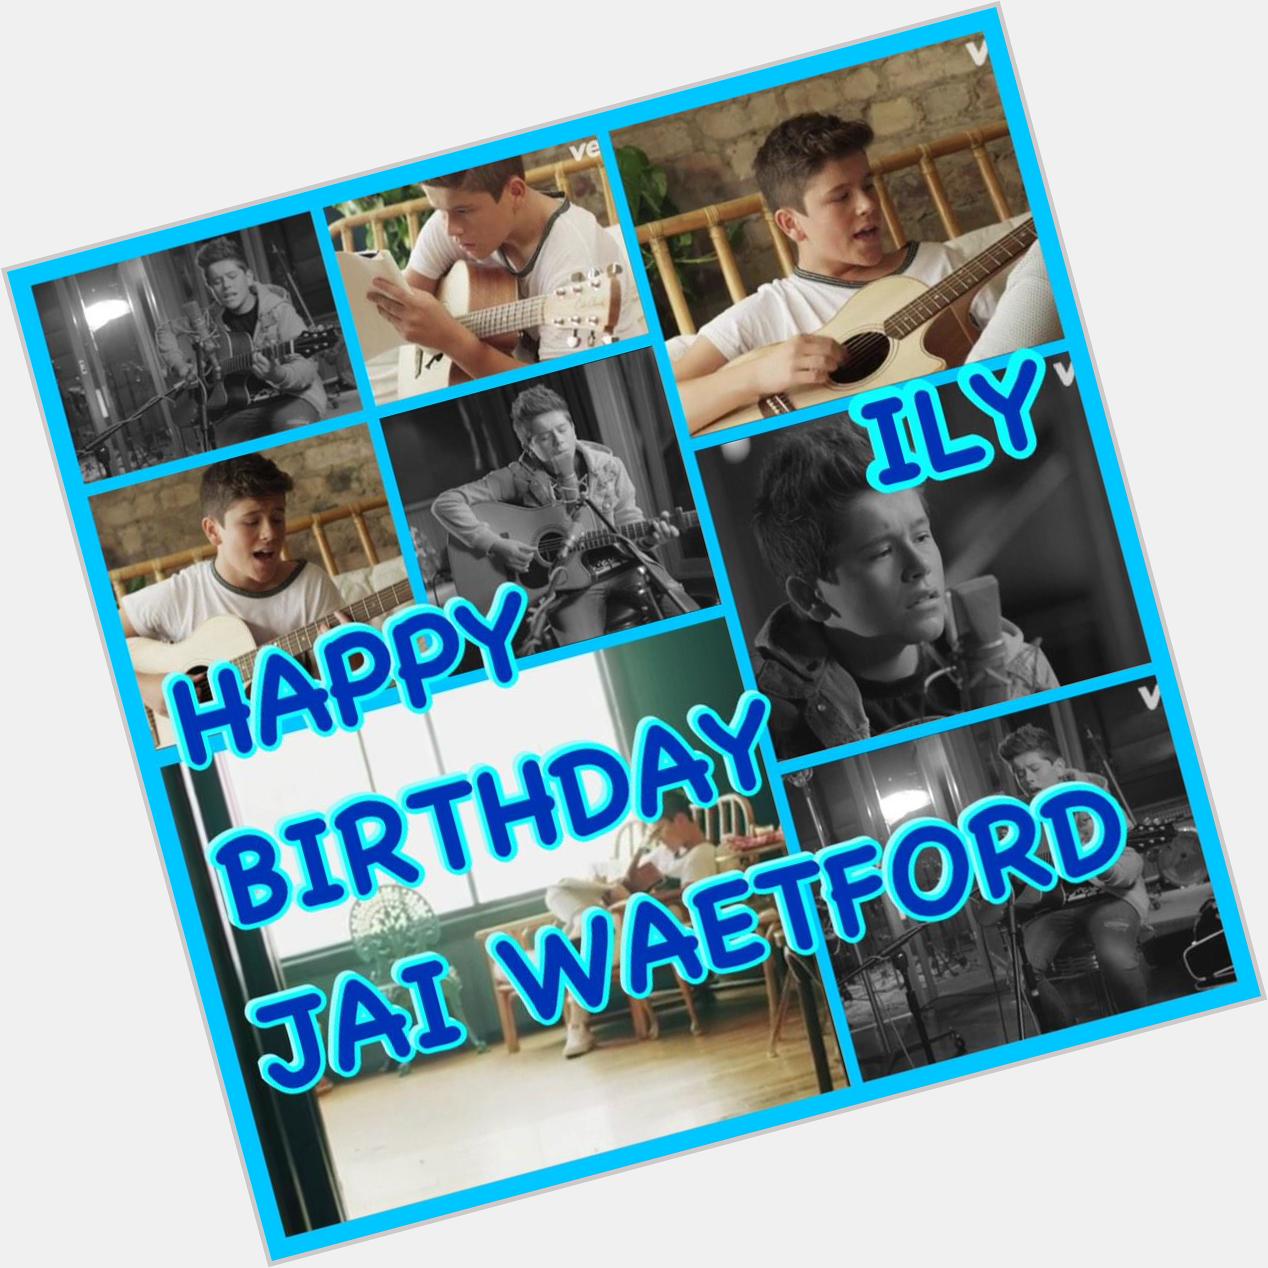 Happy Birthday Jai Waetford  